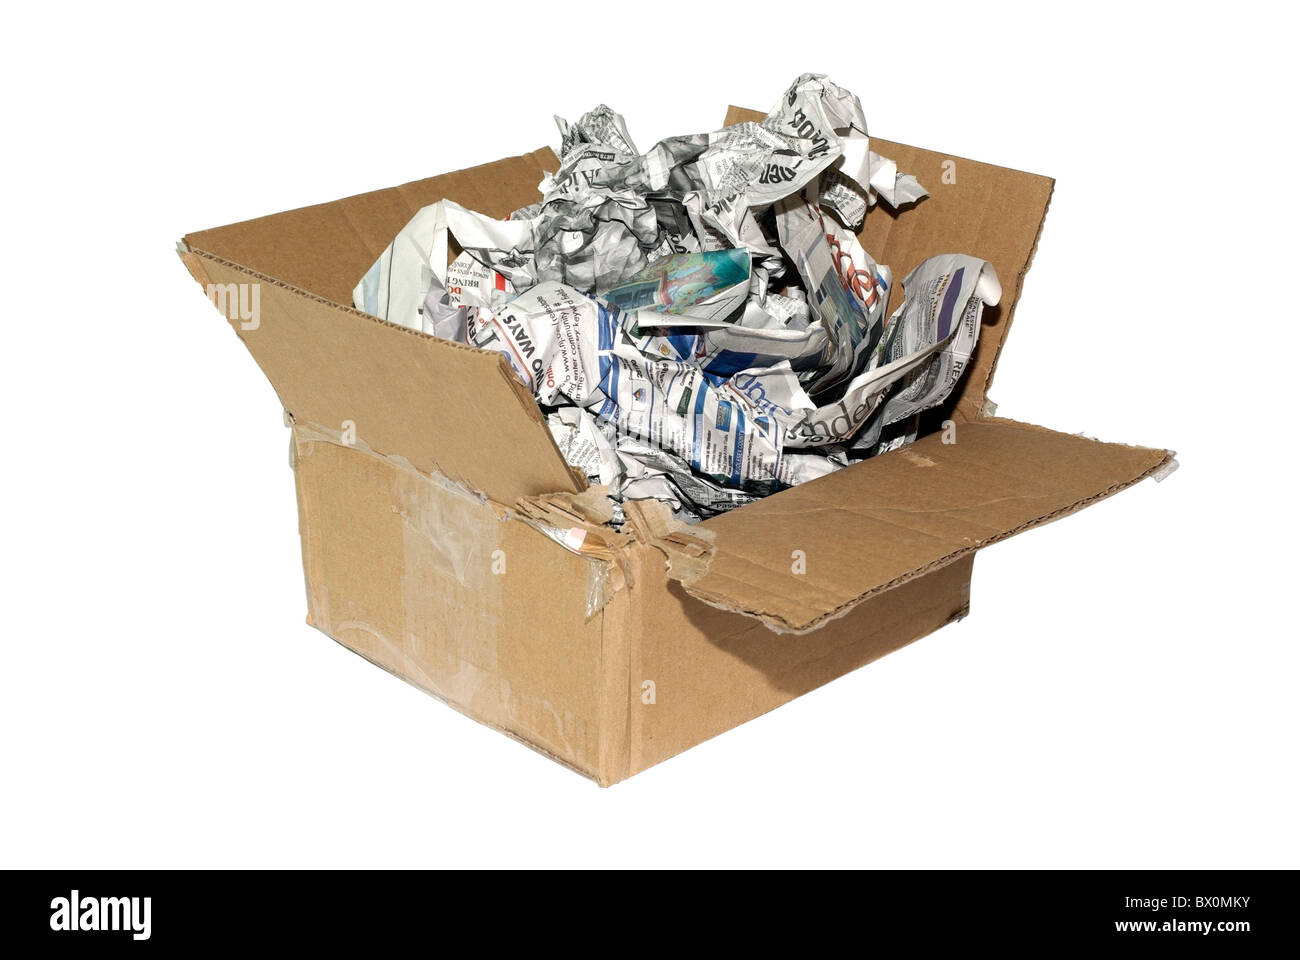 Billige Variante des Pakets für zerbrechliche Artikel. Karton mit Zeitungen isoliert auf weißem Hintergrund. Stockfoto